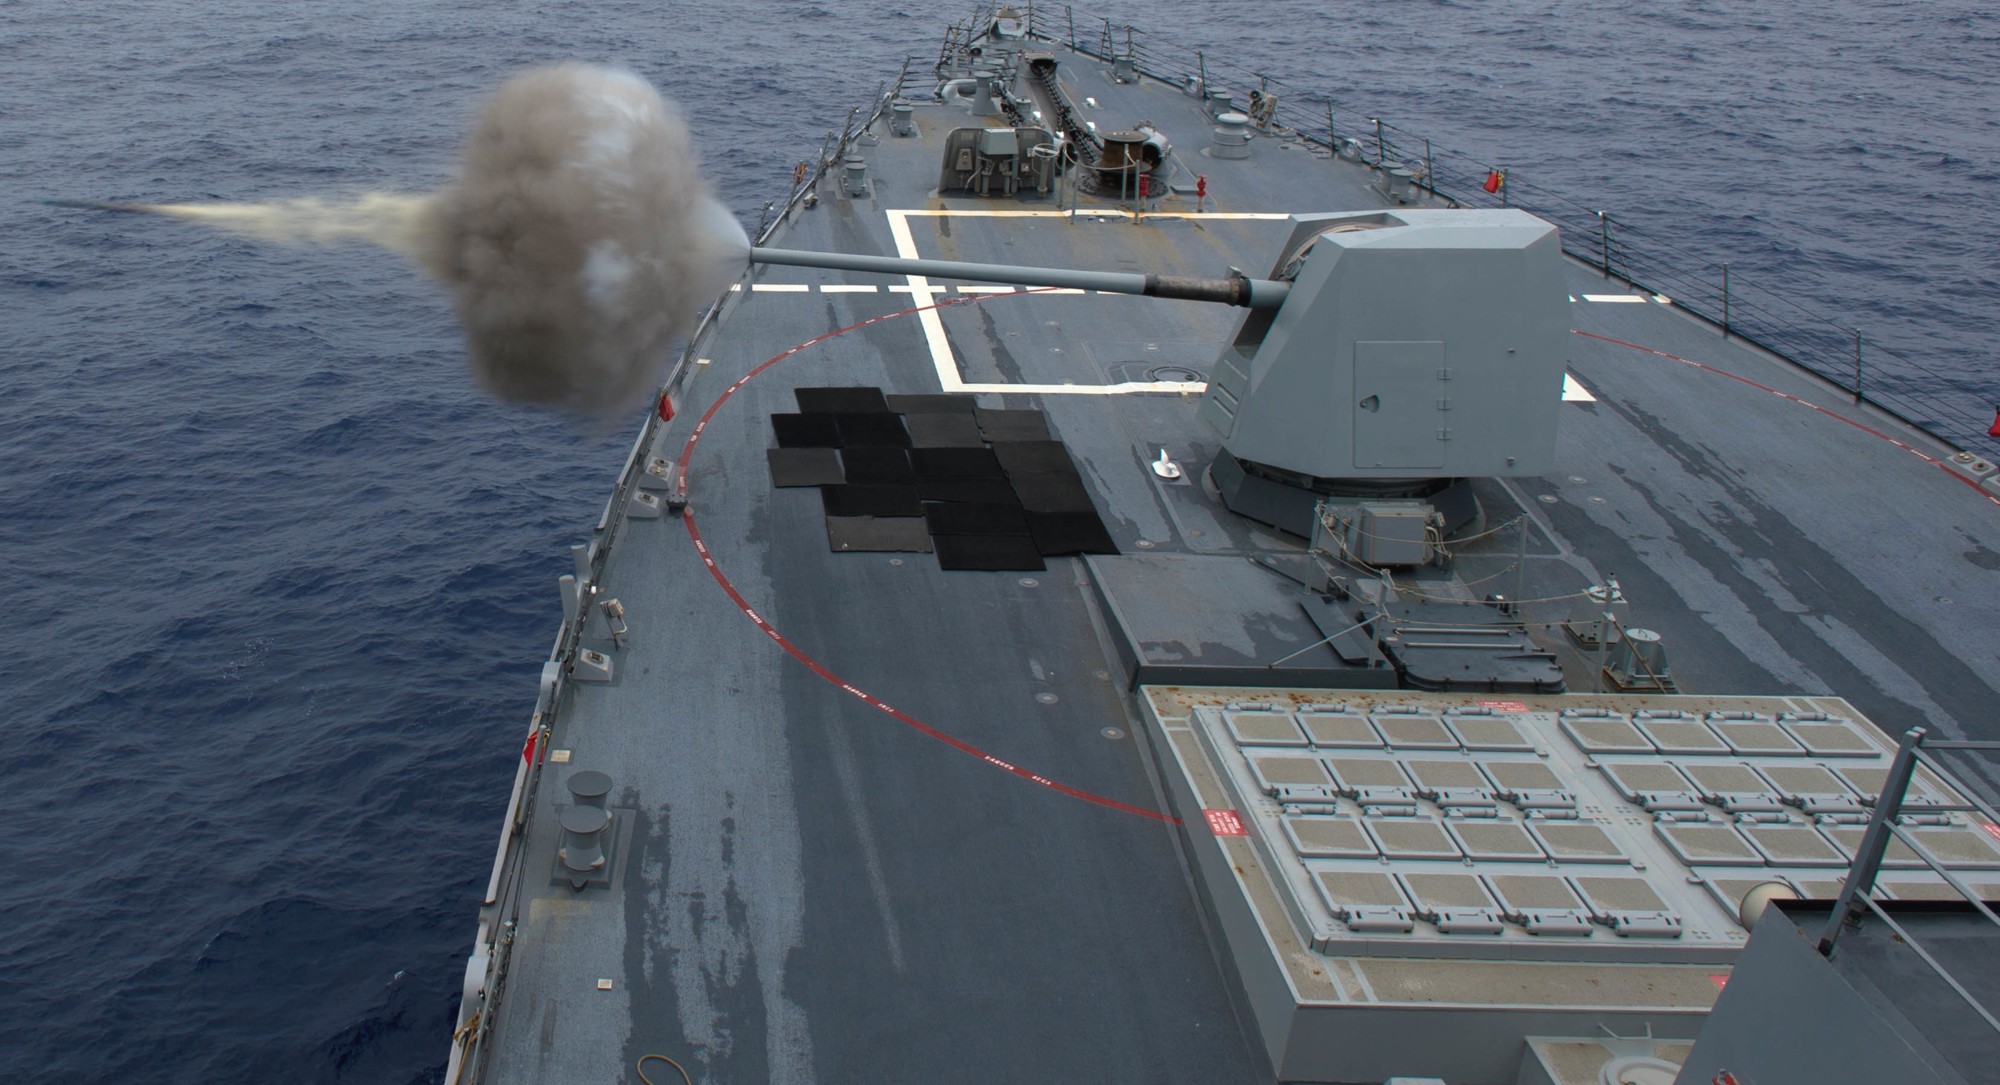 ddg-106 uss stockdale arleigh burke class guided missile destroyer aegis us navy mk.45 gun fire exercise 88